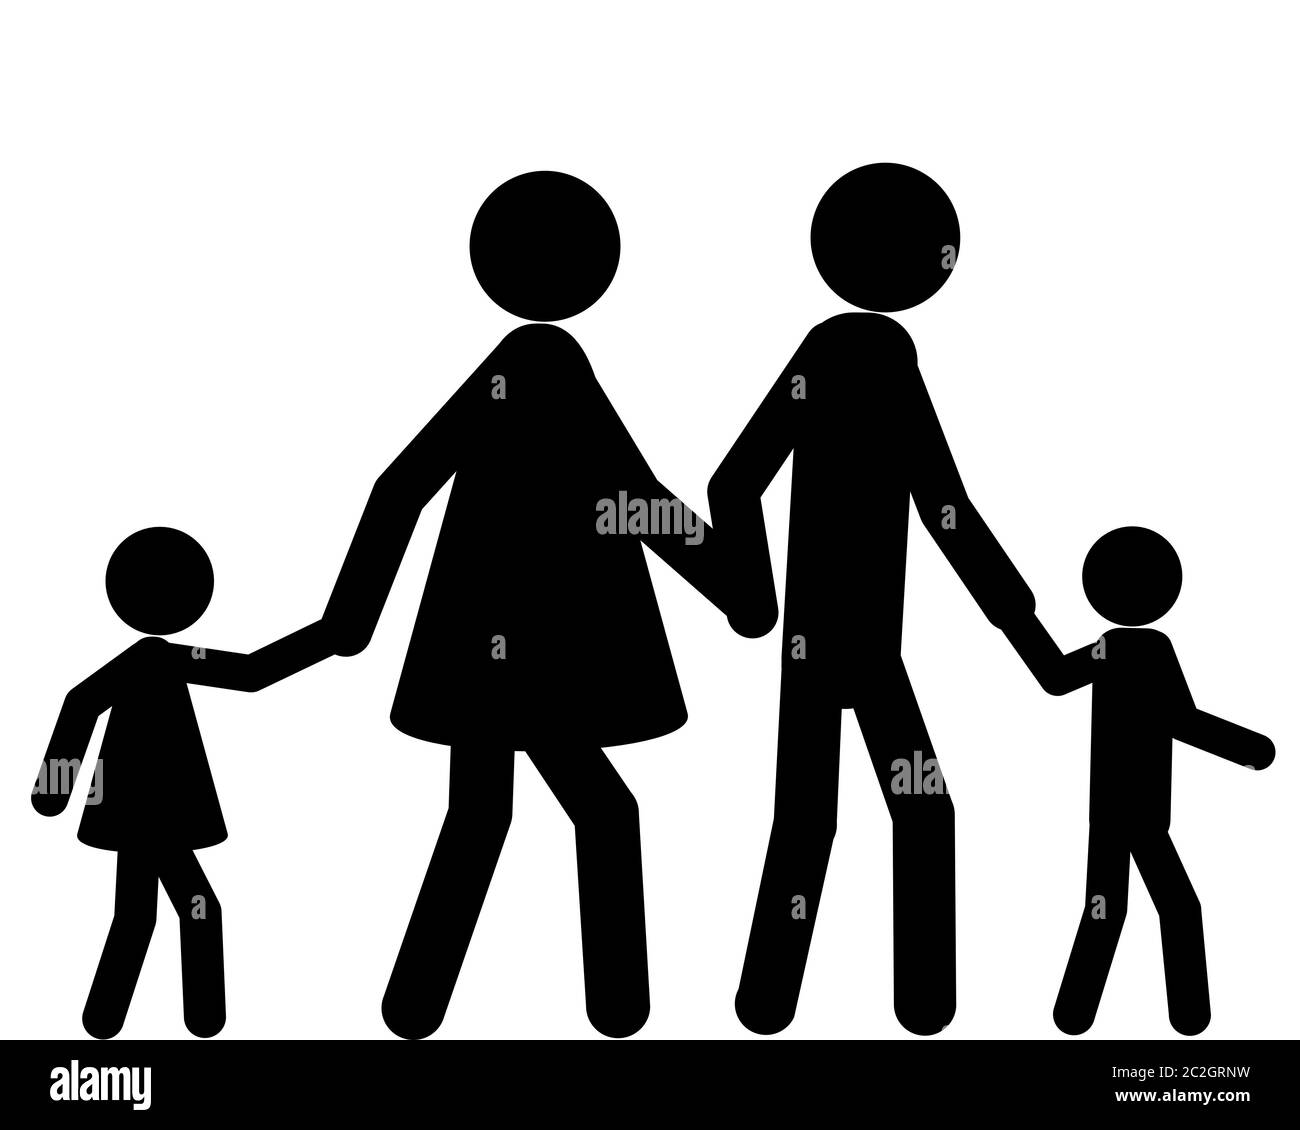 Familie beim spazieren gehen Hand in Hand Stock Photo